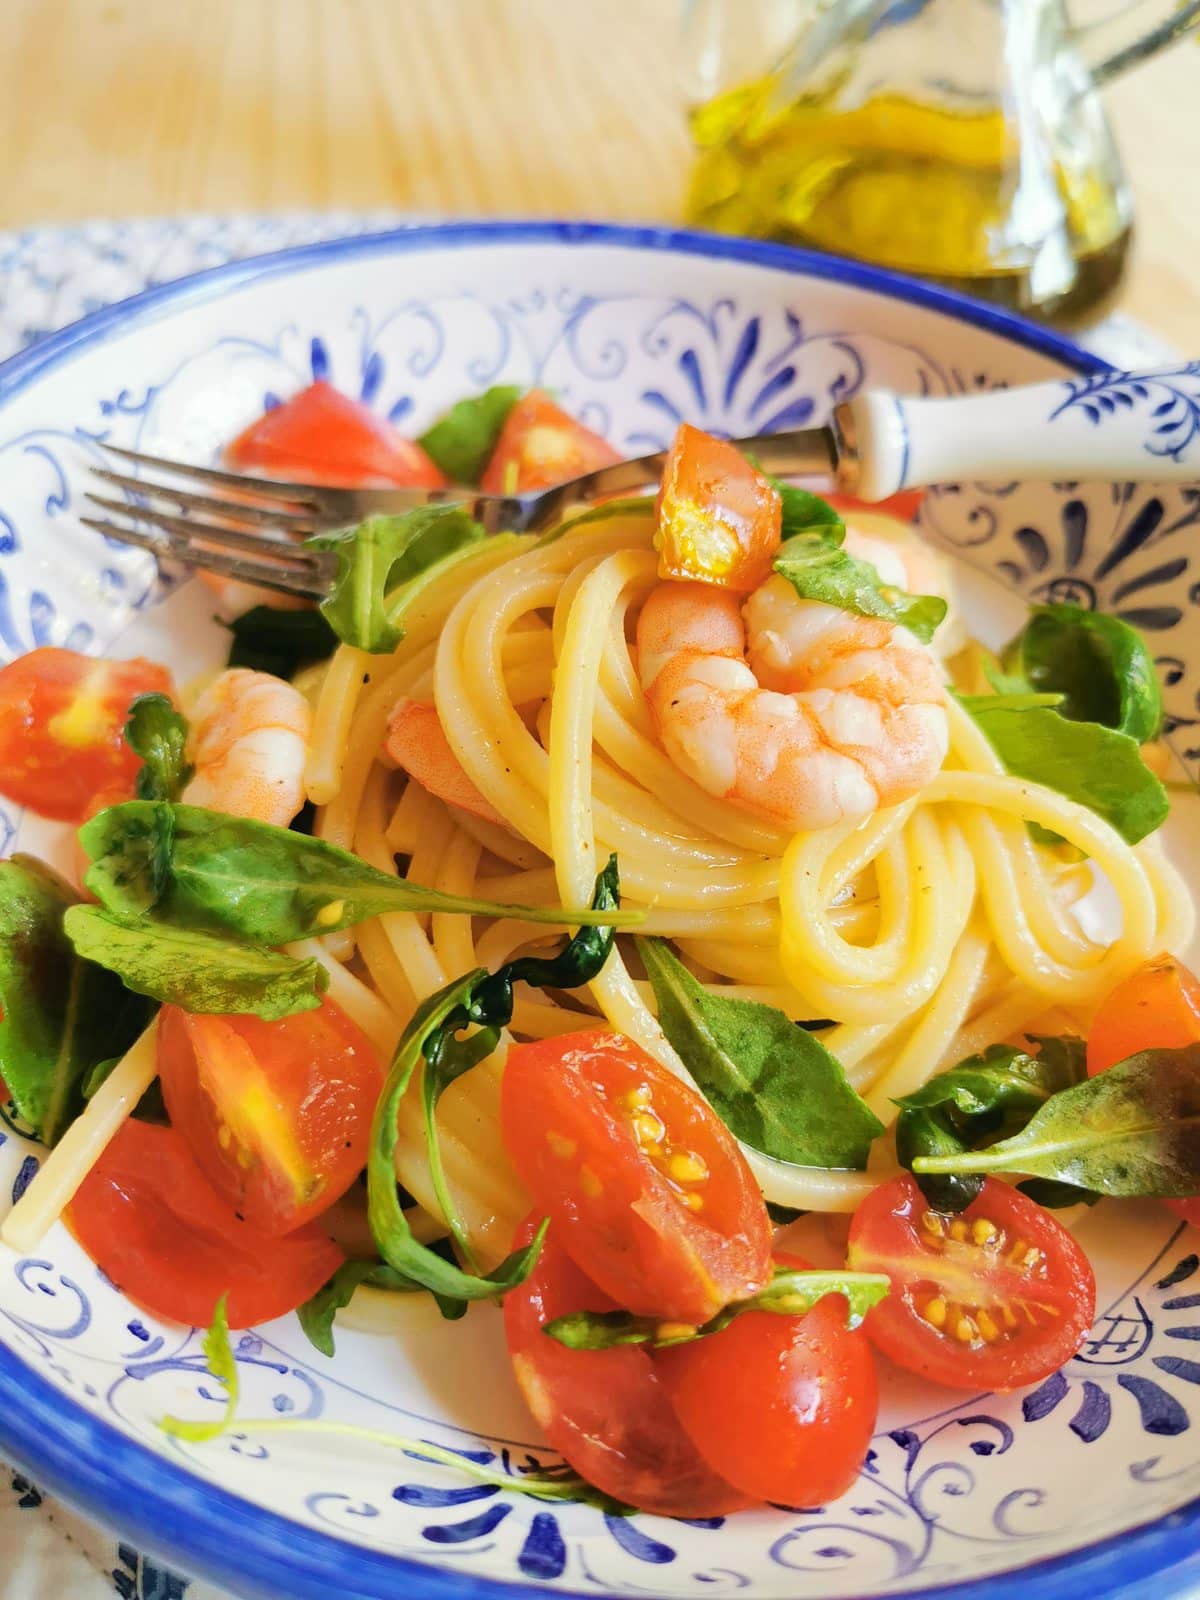 Italian cold spaghetti salad recipe from Marche